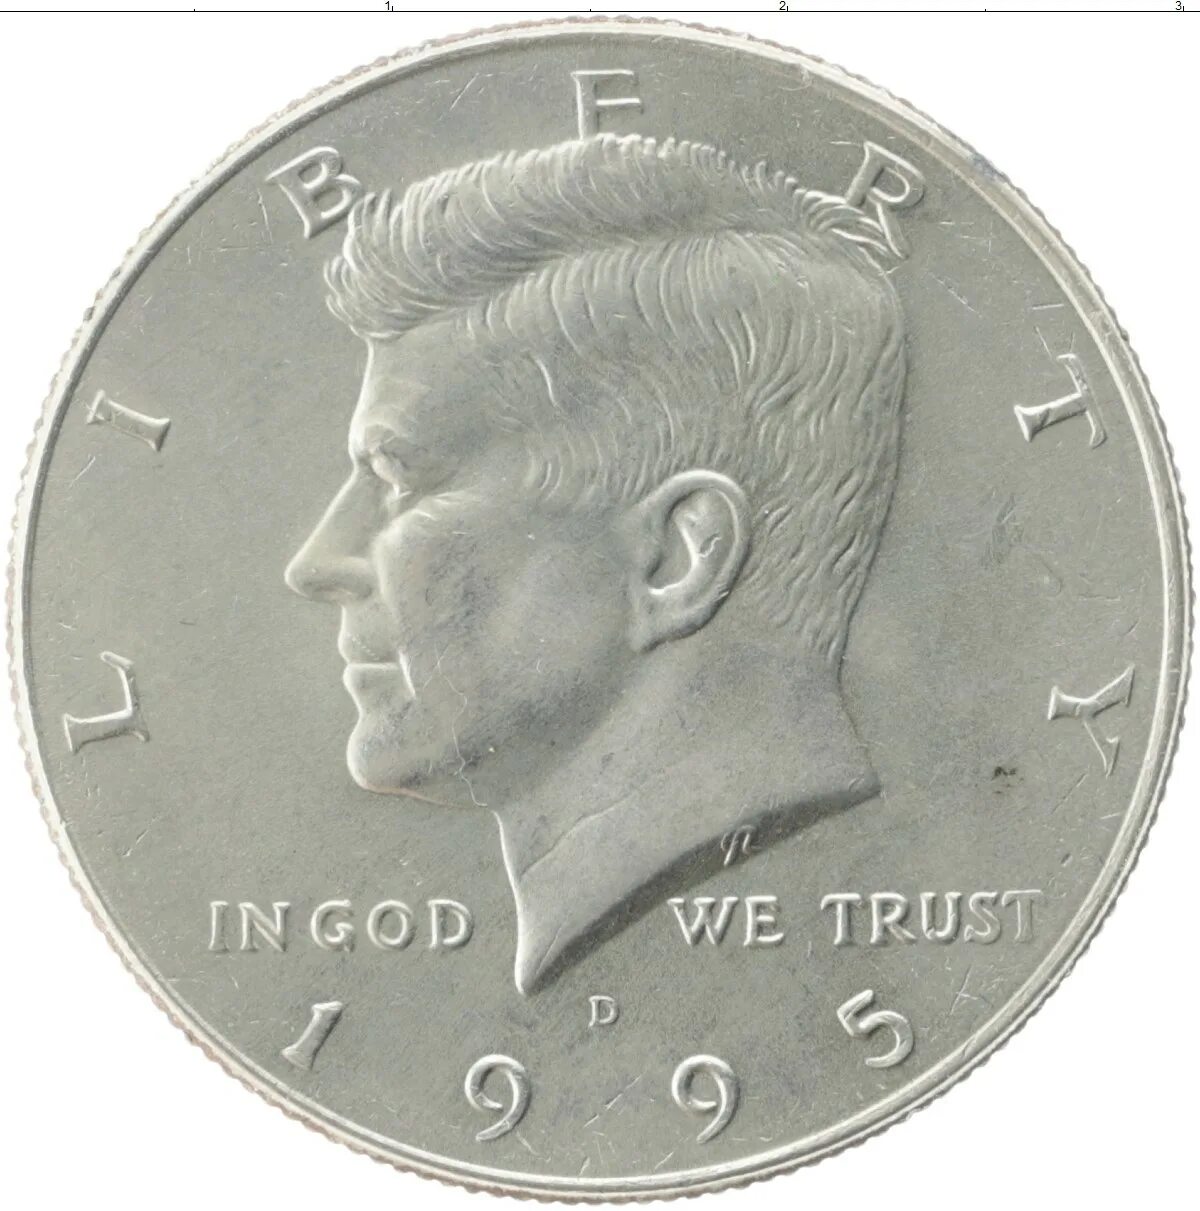 1 доллар 1995. Говорящие монеты с изображением Джона Кеннеди. Доллар 1995. Монета 10 долларов 1995 США.